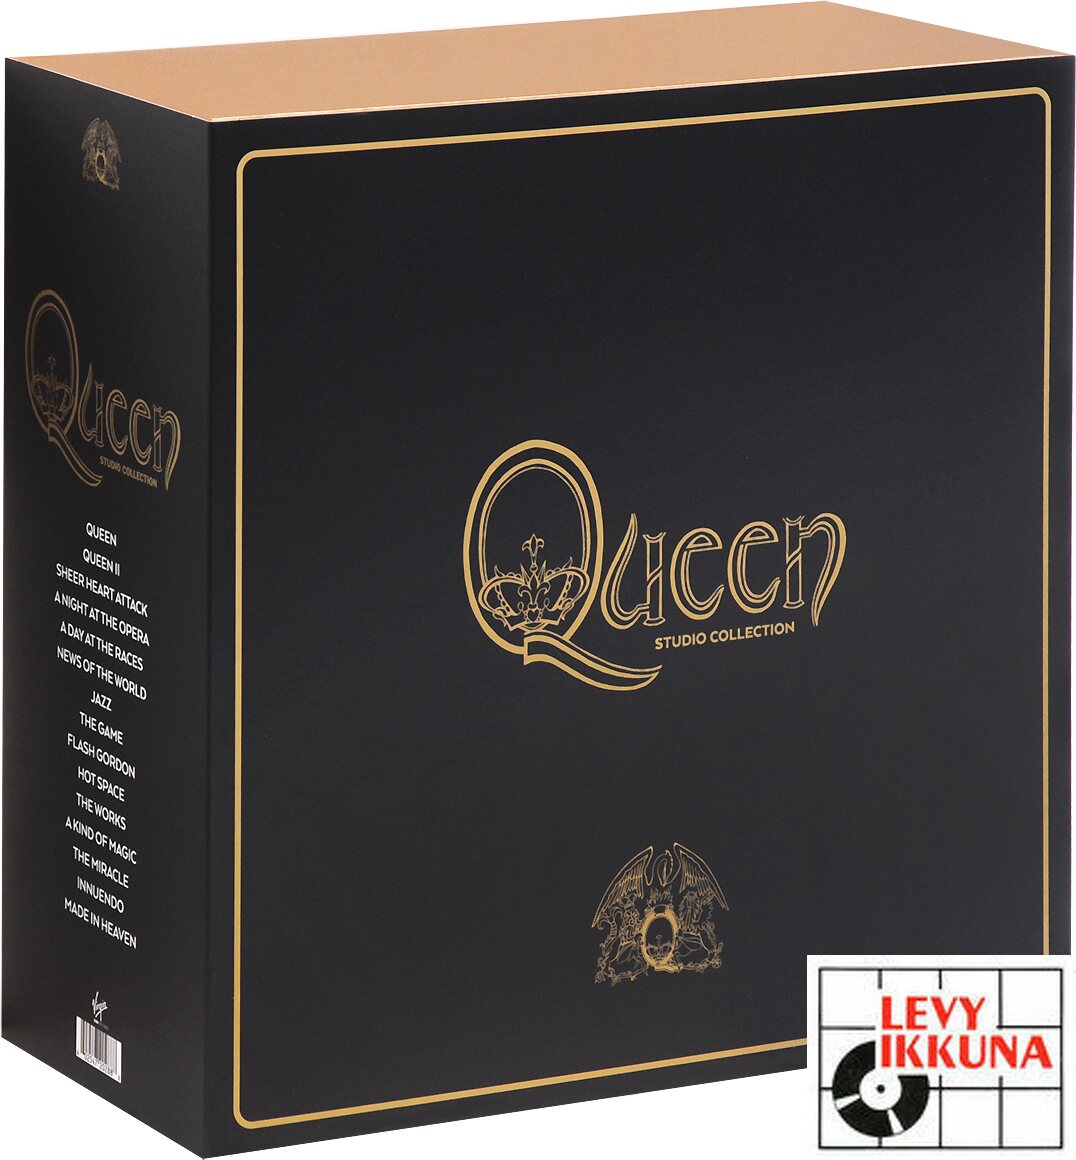 Boekhouder Mijlpaal Lang Queen ‎– Studio Collection 18LP Box Set | CLASSIC ROCK | Levyikkuna